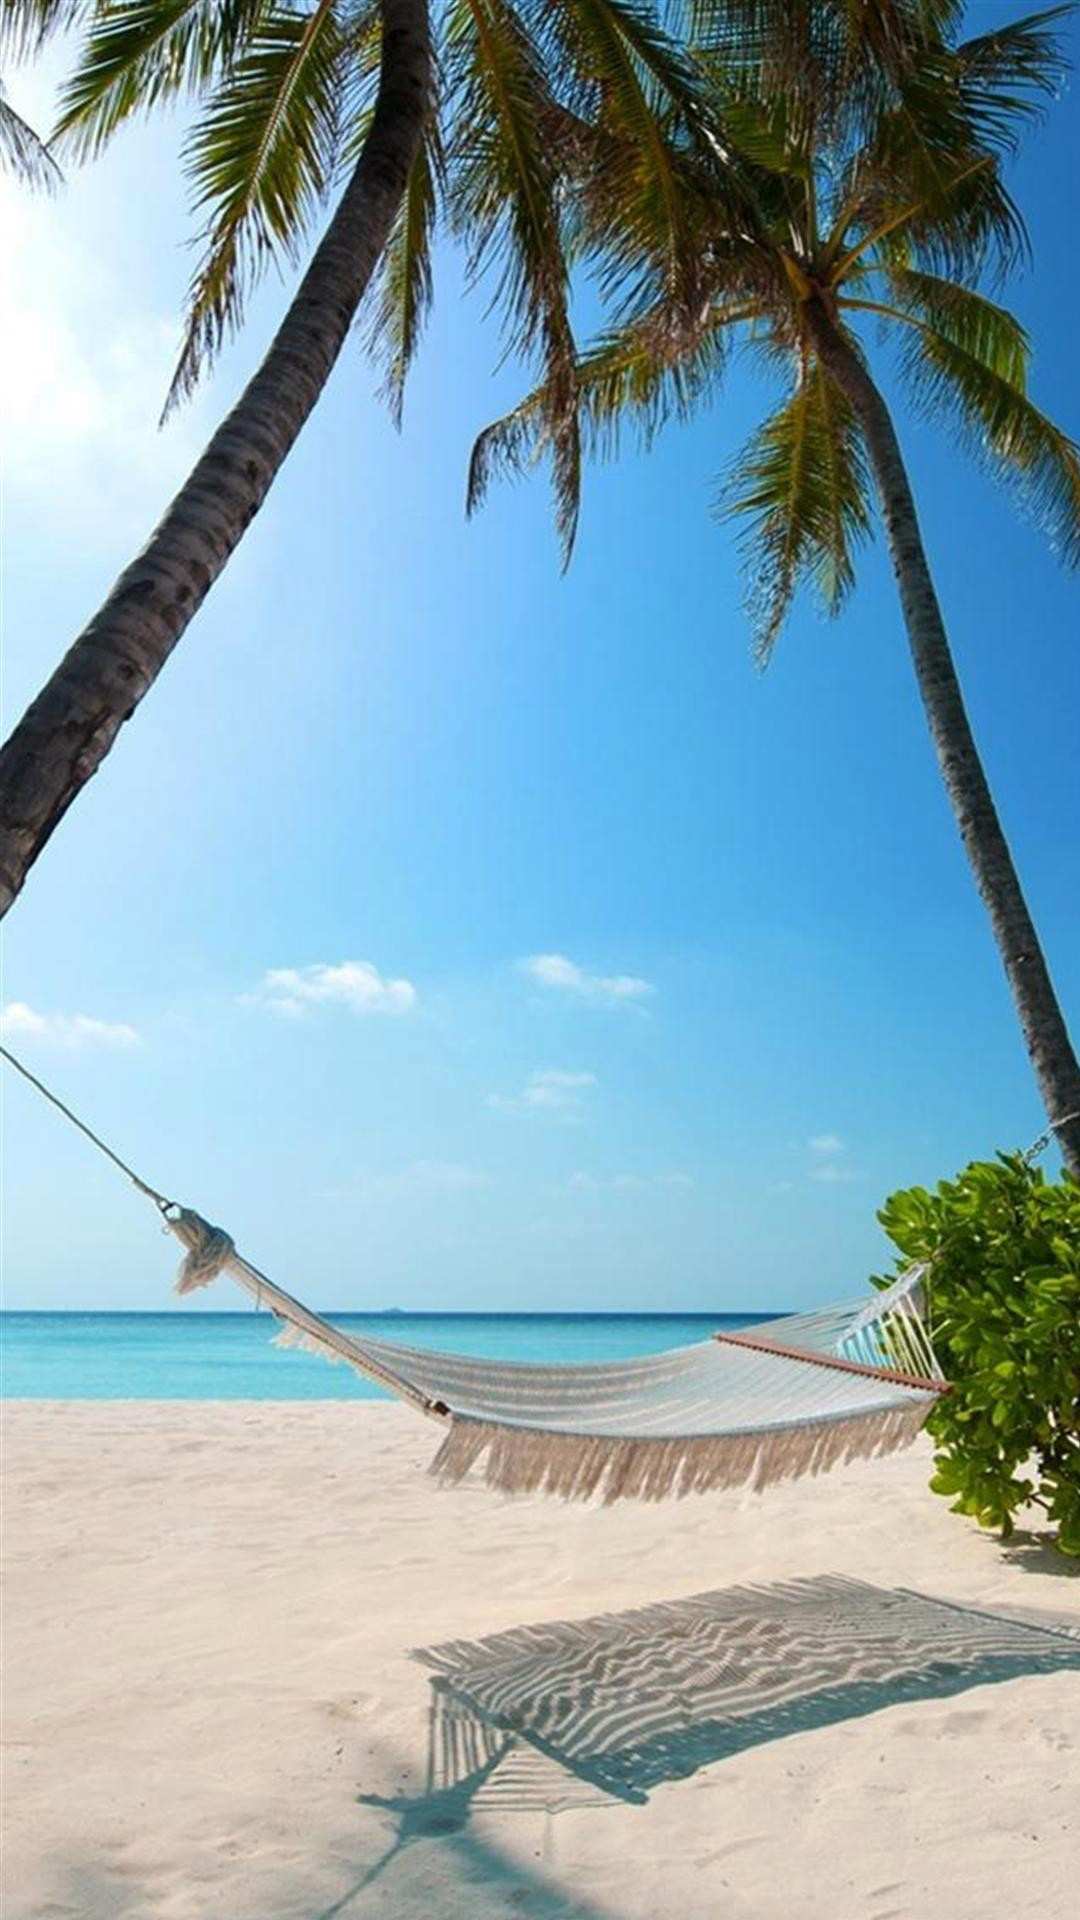 fond d'écran de plage iphone 6,hamac,caraïbes,vacances,palmier,arbre